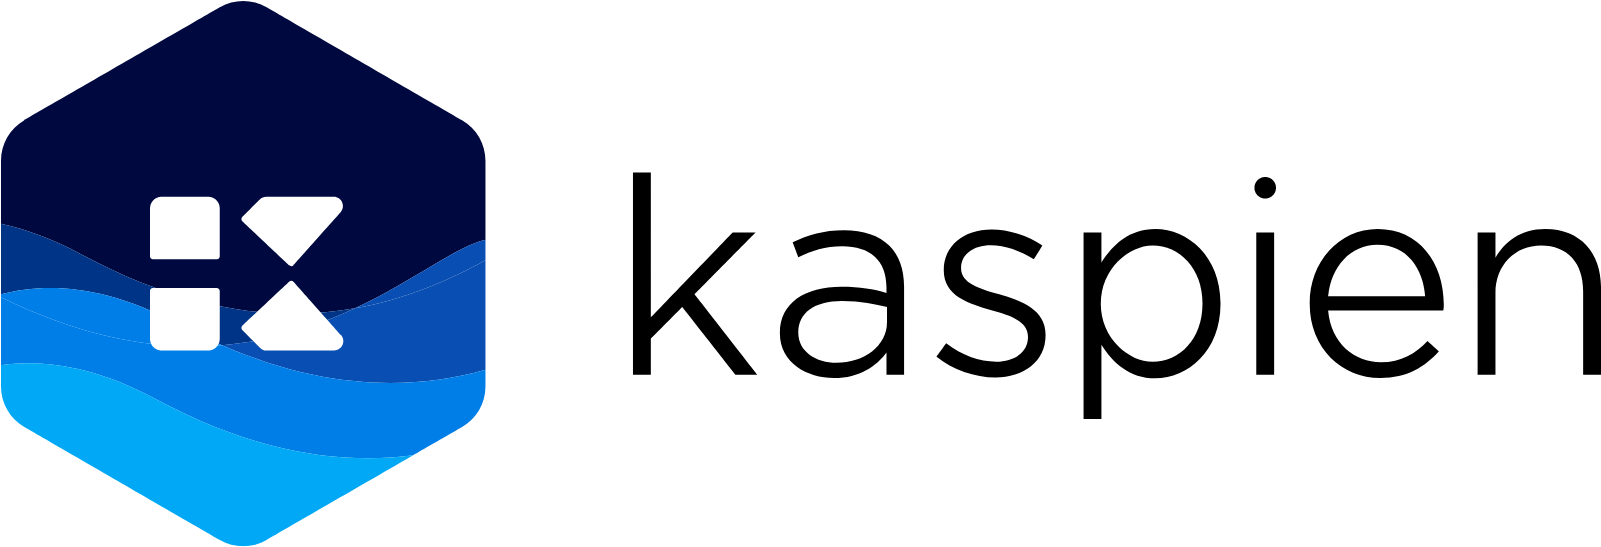 Kaspien logo large (transparent PNG)